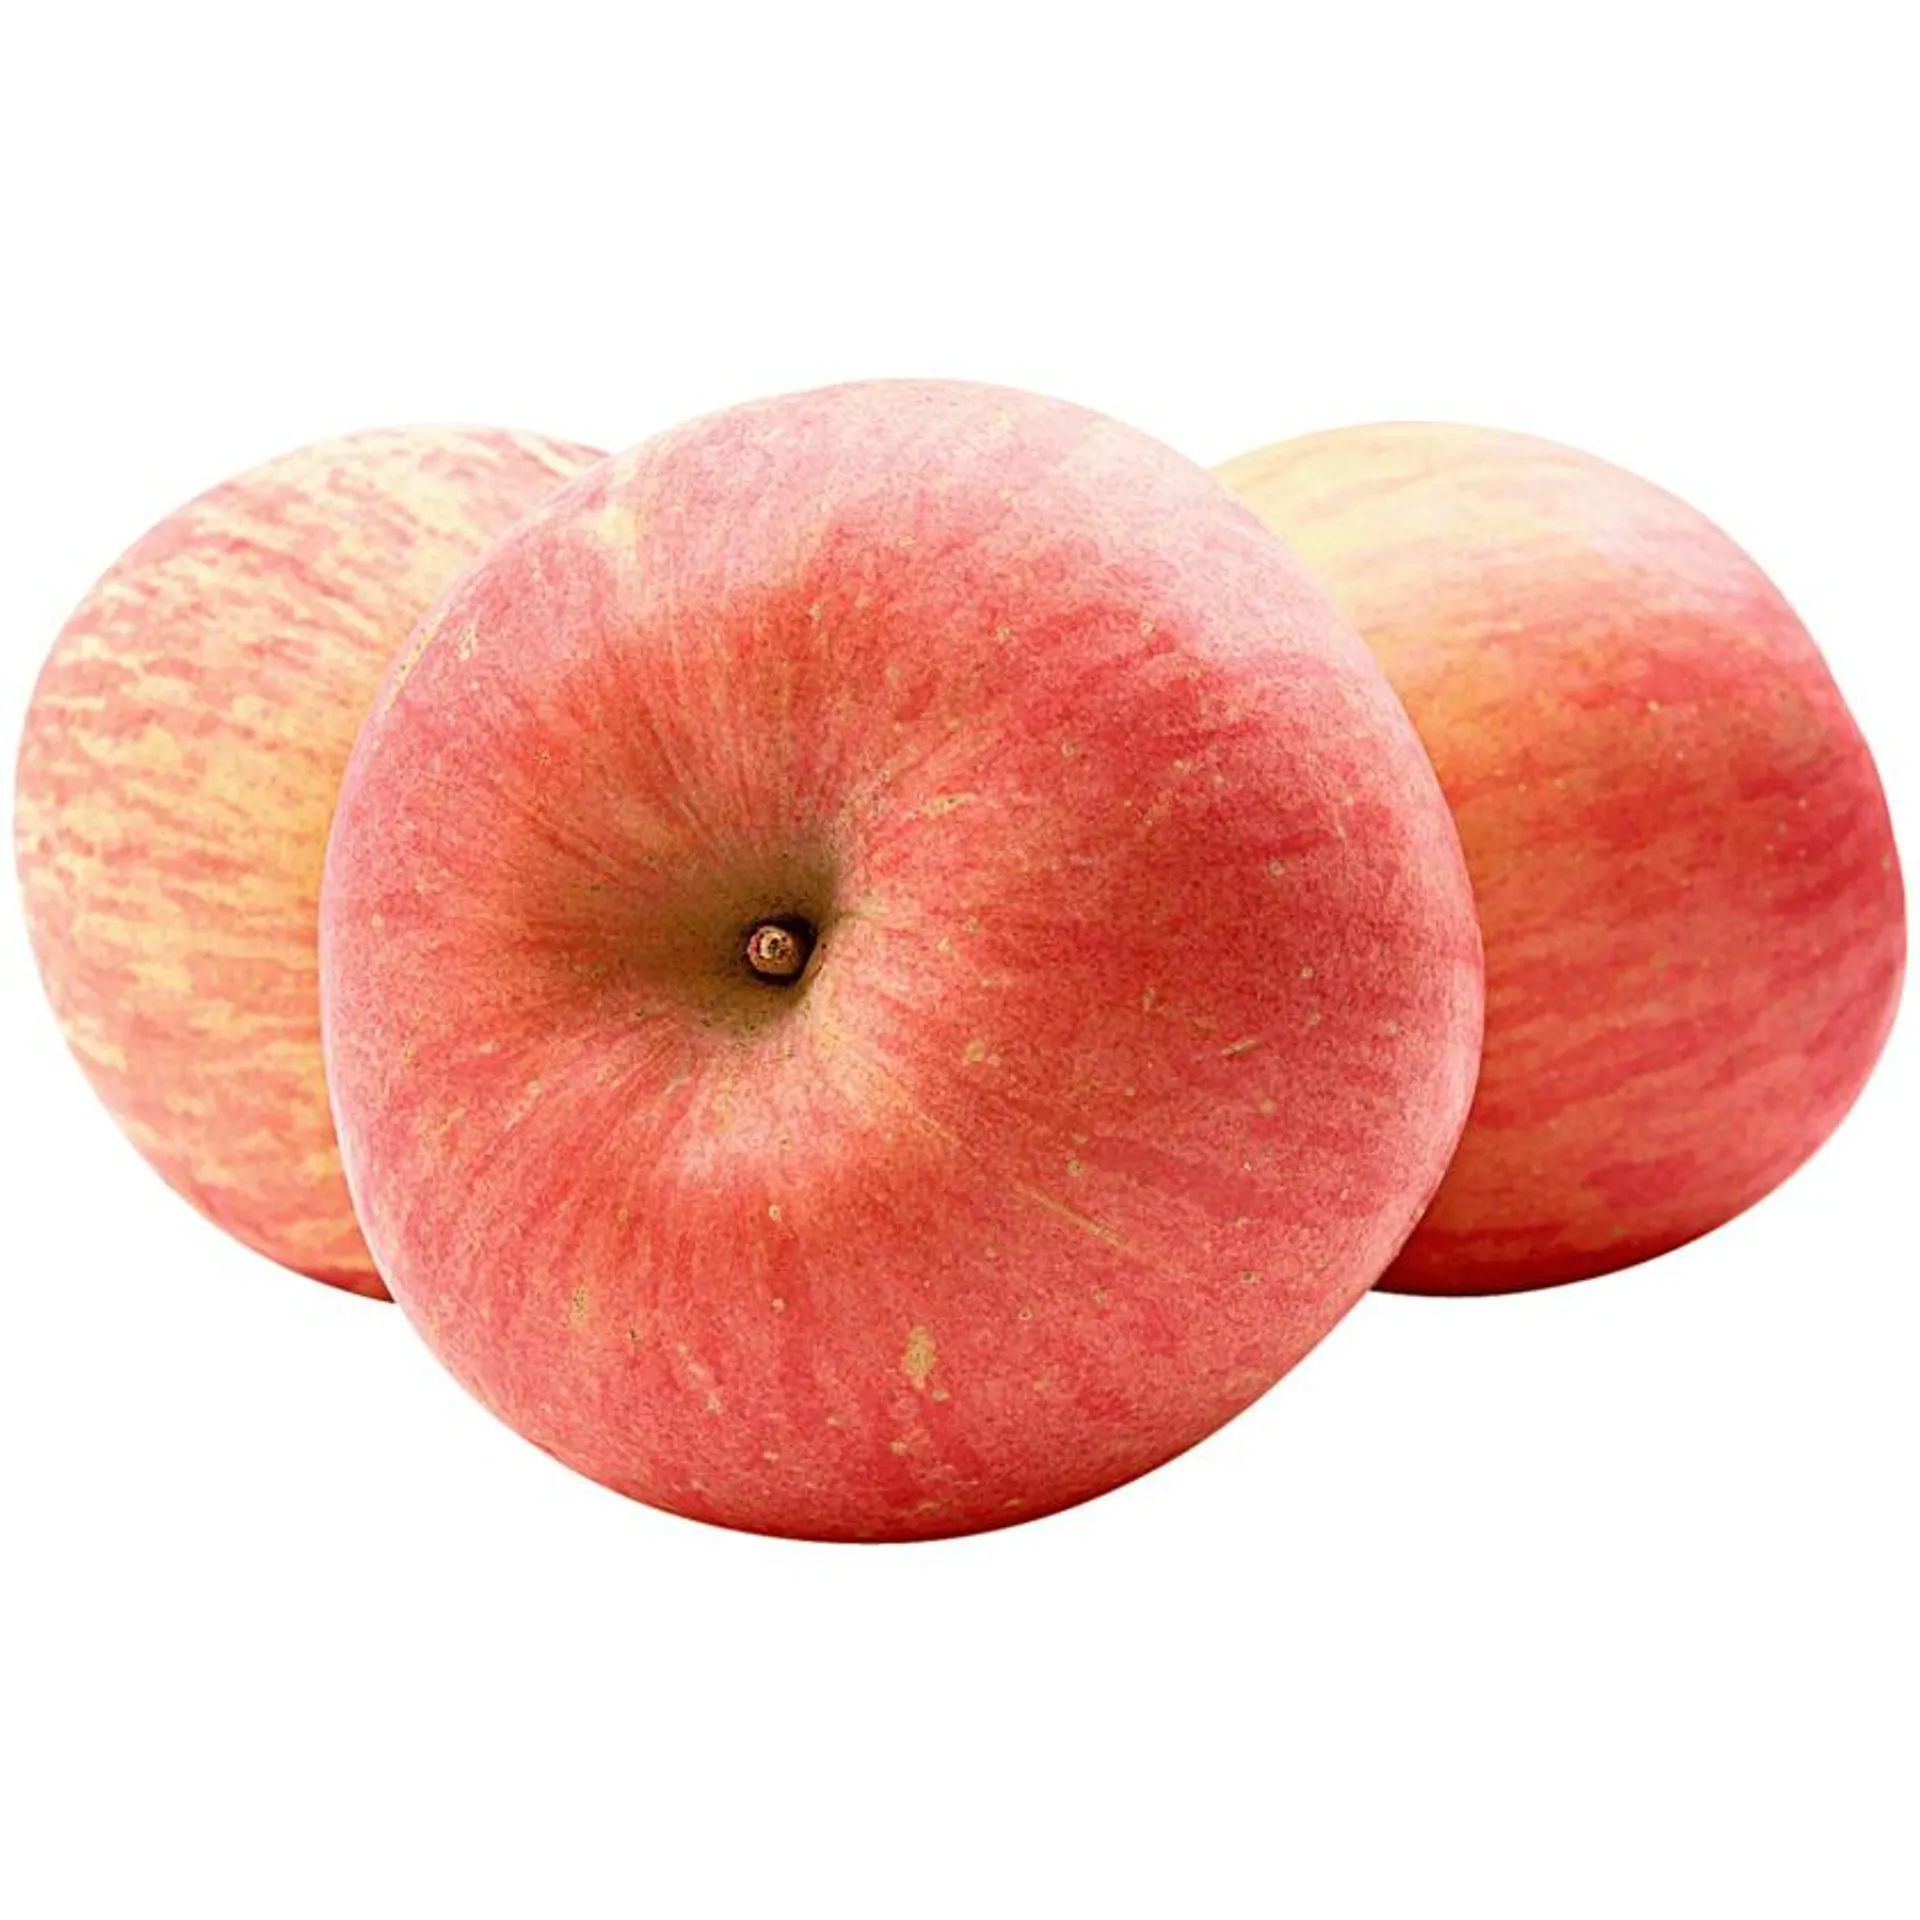 Apfel Pink Lady 6 Stück in der Schale